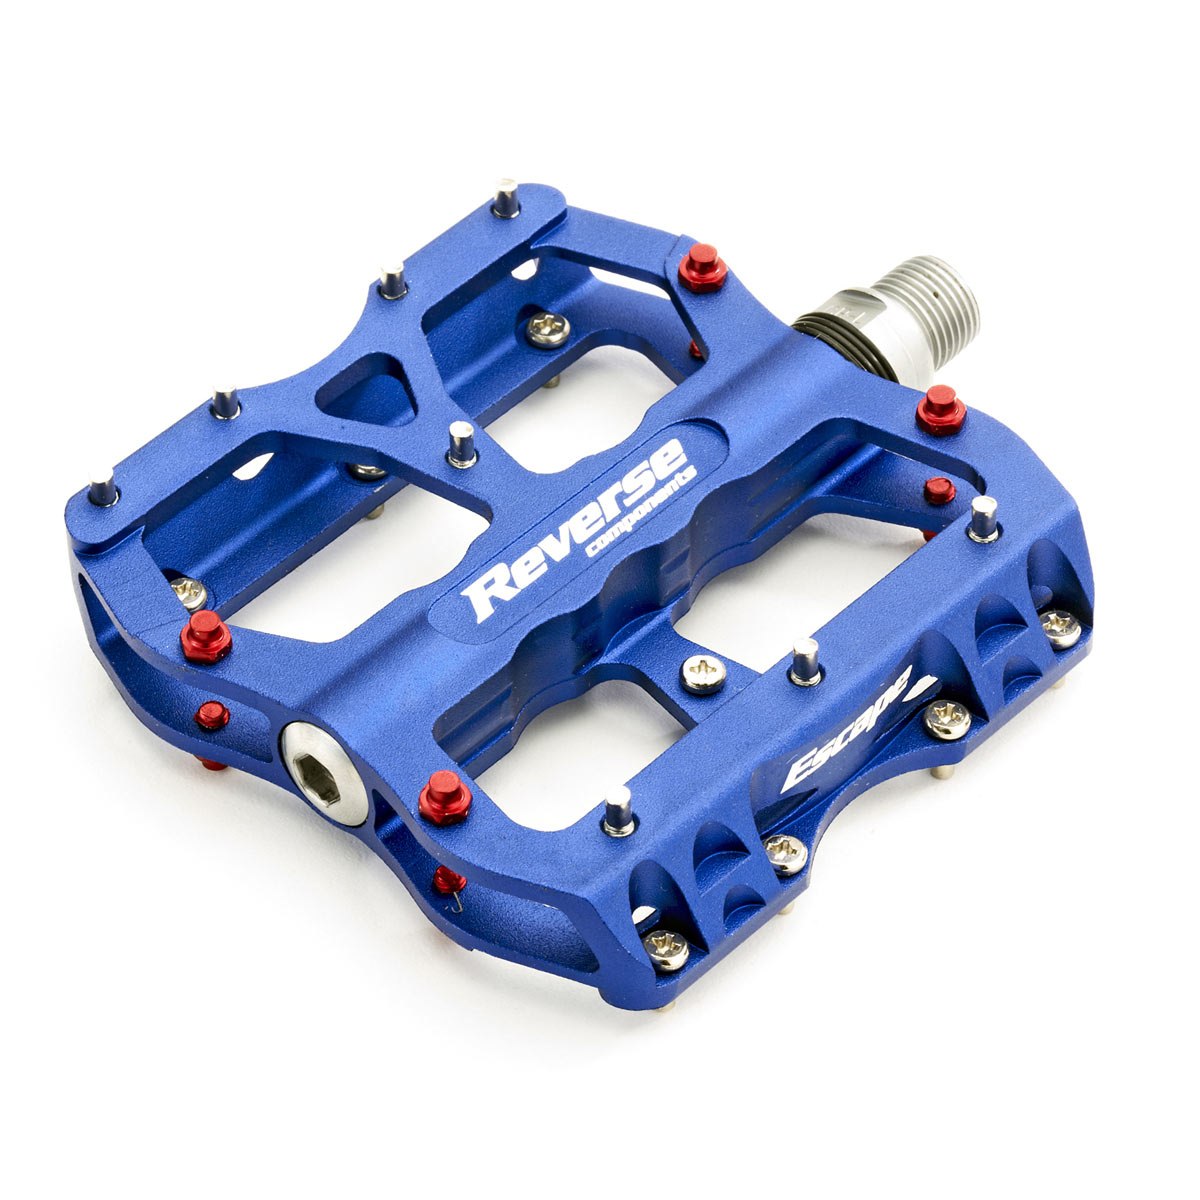 Produktbild von Reverse Components Escape Pedal - blau